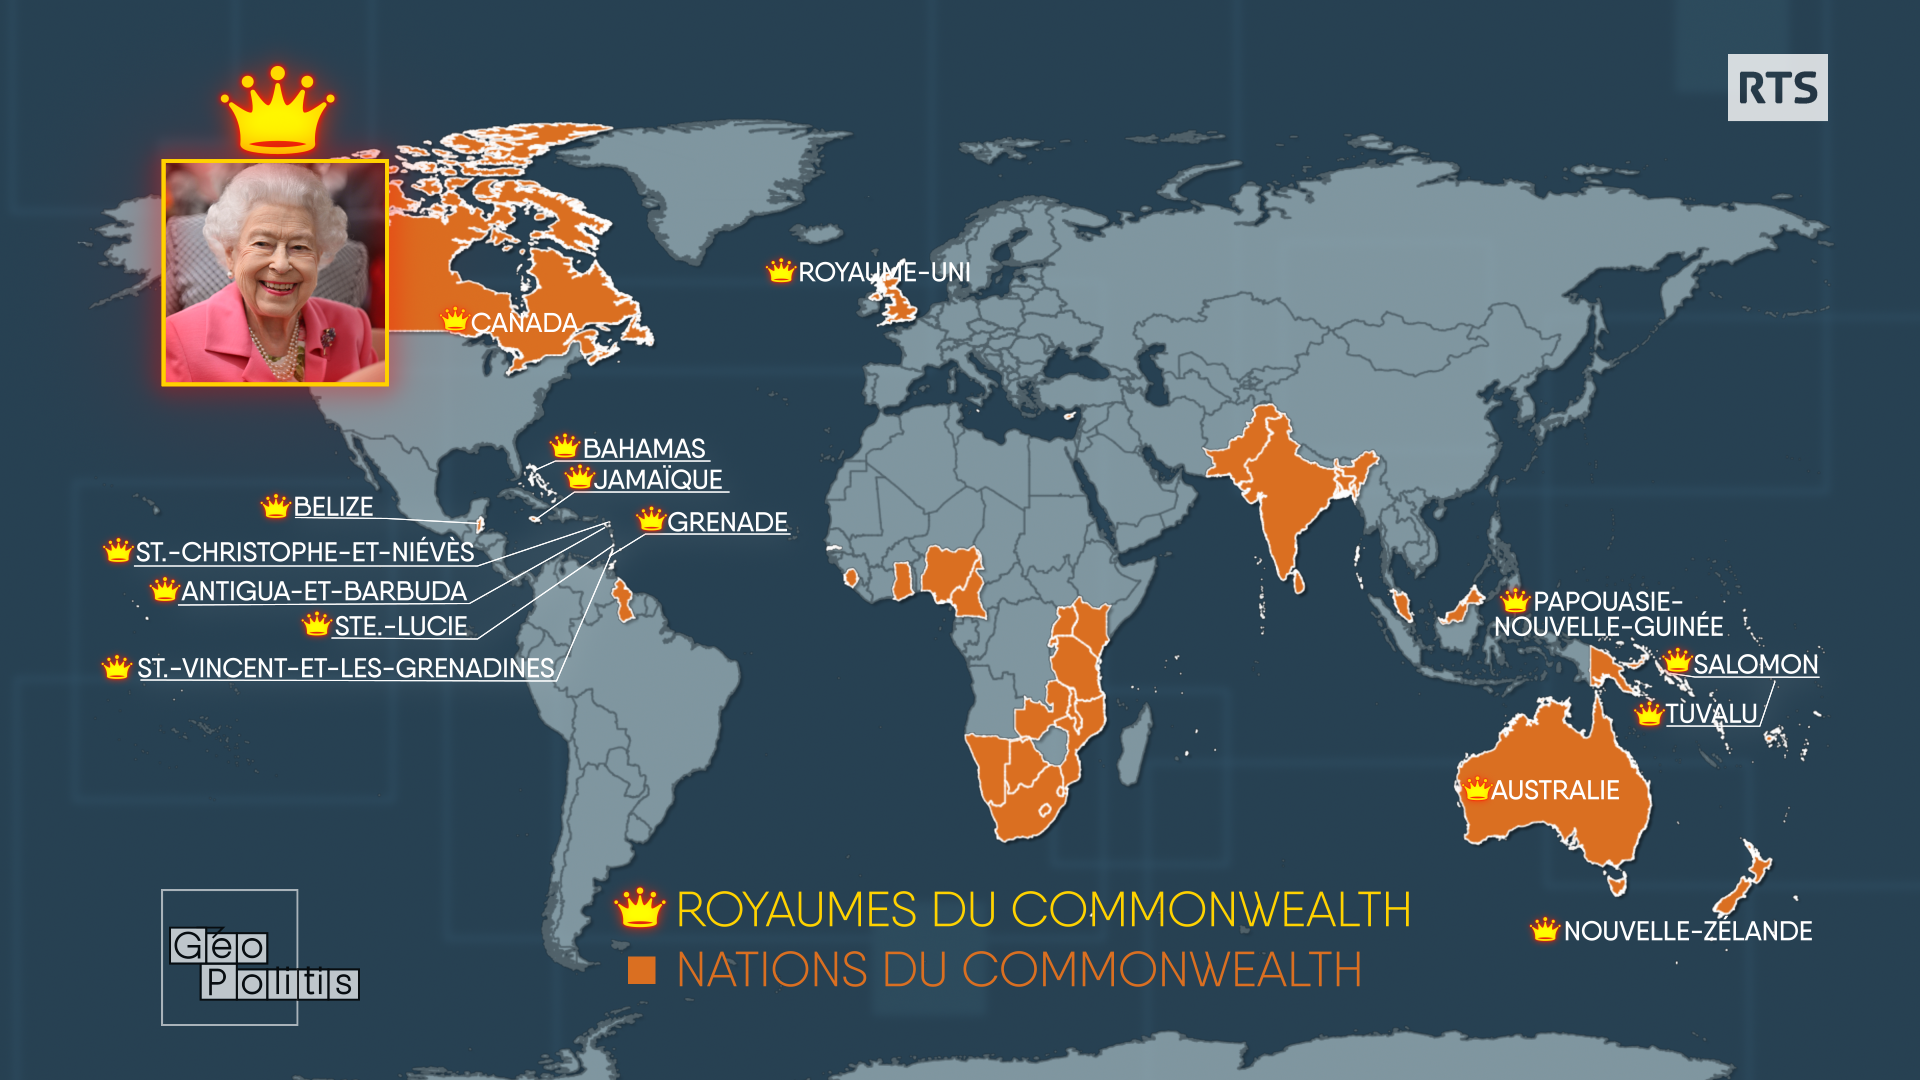 La carte des royaumes et des nations du Commonwealth. [RTS - Géopolitis]